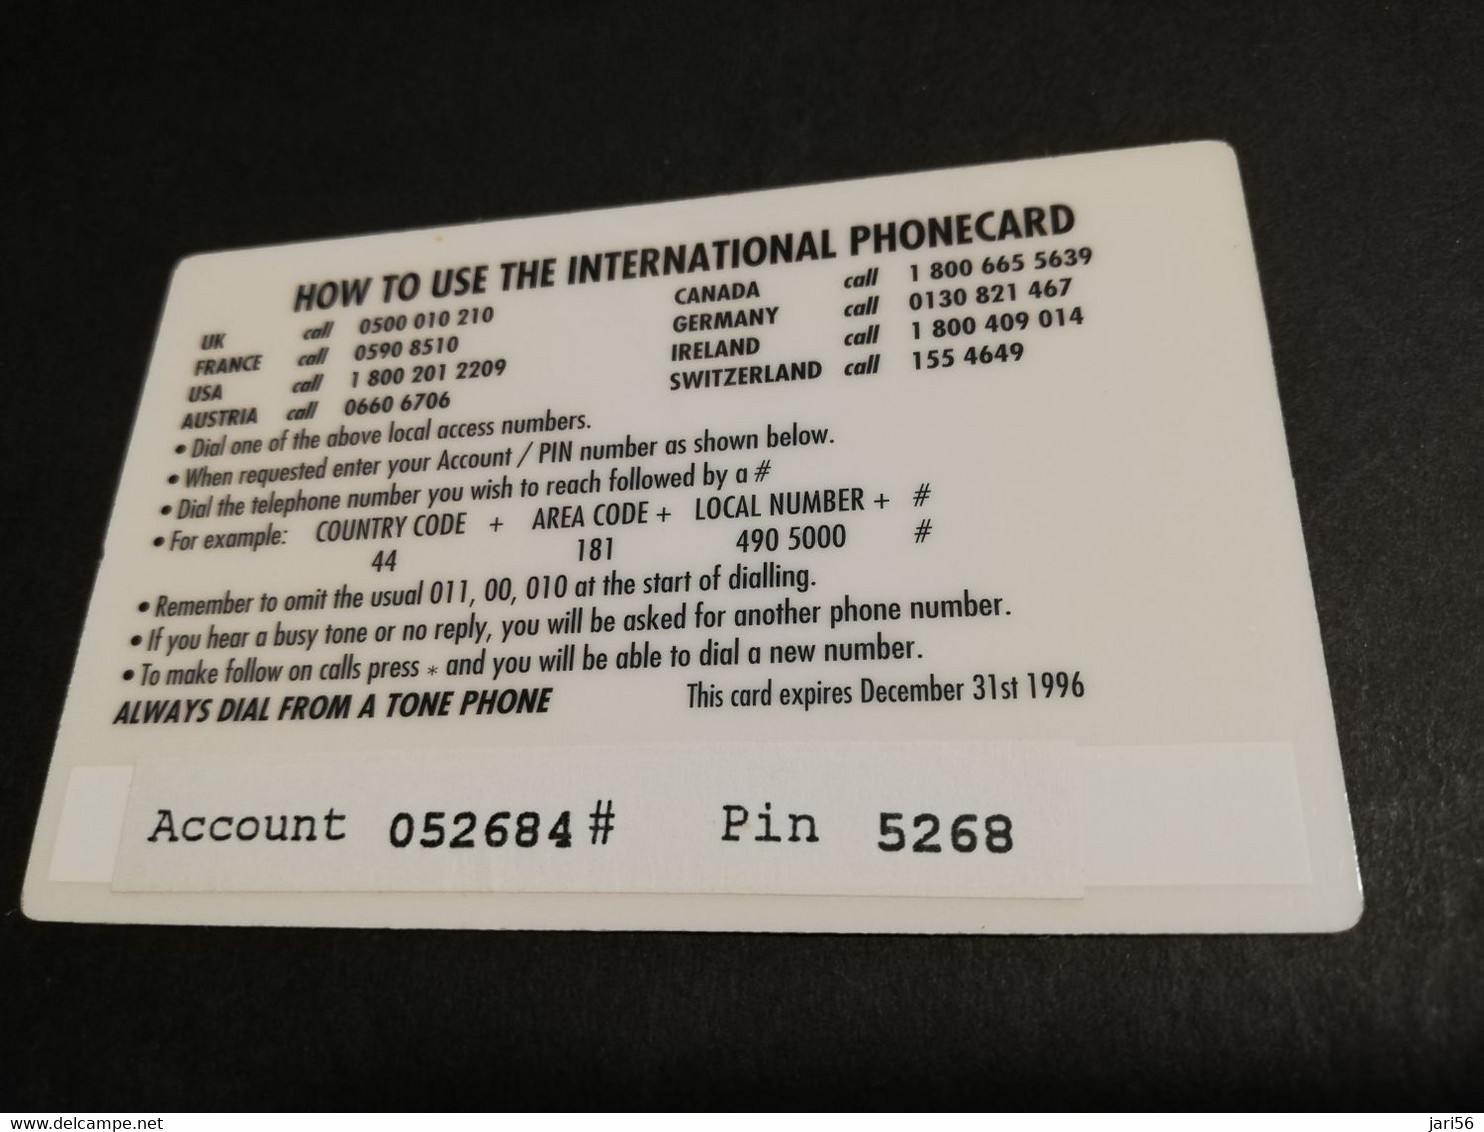 GREAT BRITAIN   3 POUND  AIR PLANES  B-17   DIT PHONECARD    PREPAID CARD      **5917** - Collezioni